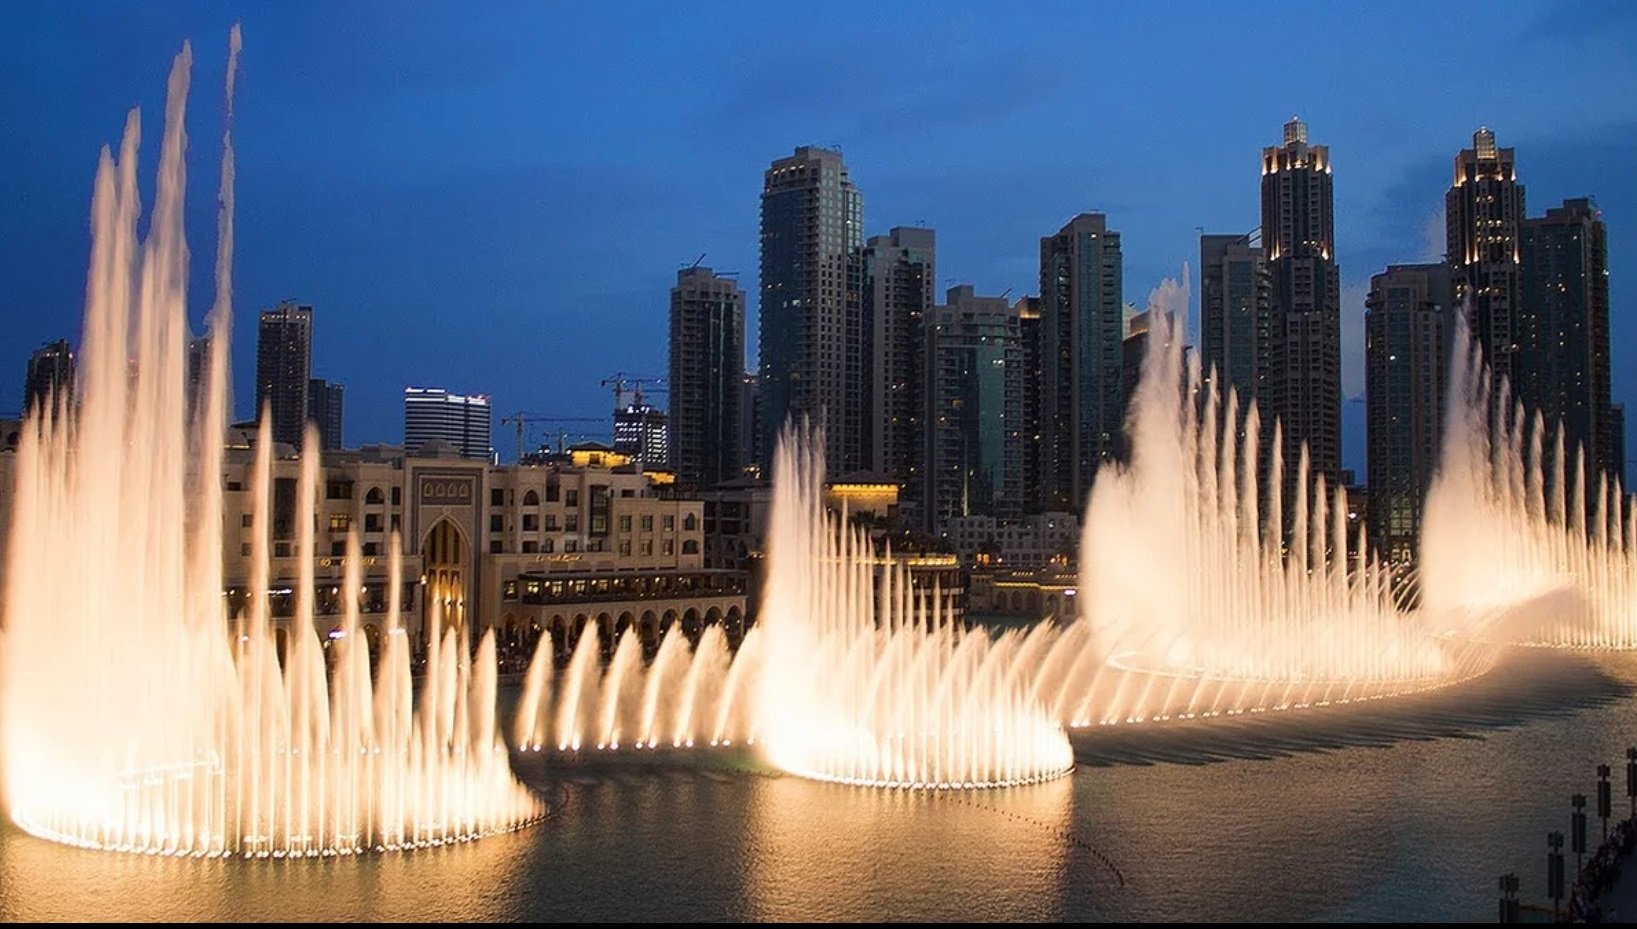 Дубайские фонтаны. Бурдж Халифа фонтаны. Поющие фонтаны Бурдж Халифа. Танцующий фонтан у Бурдж Халифа. Шоу фонтанов в Дубае Бурдж Халифа.